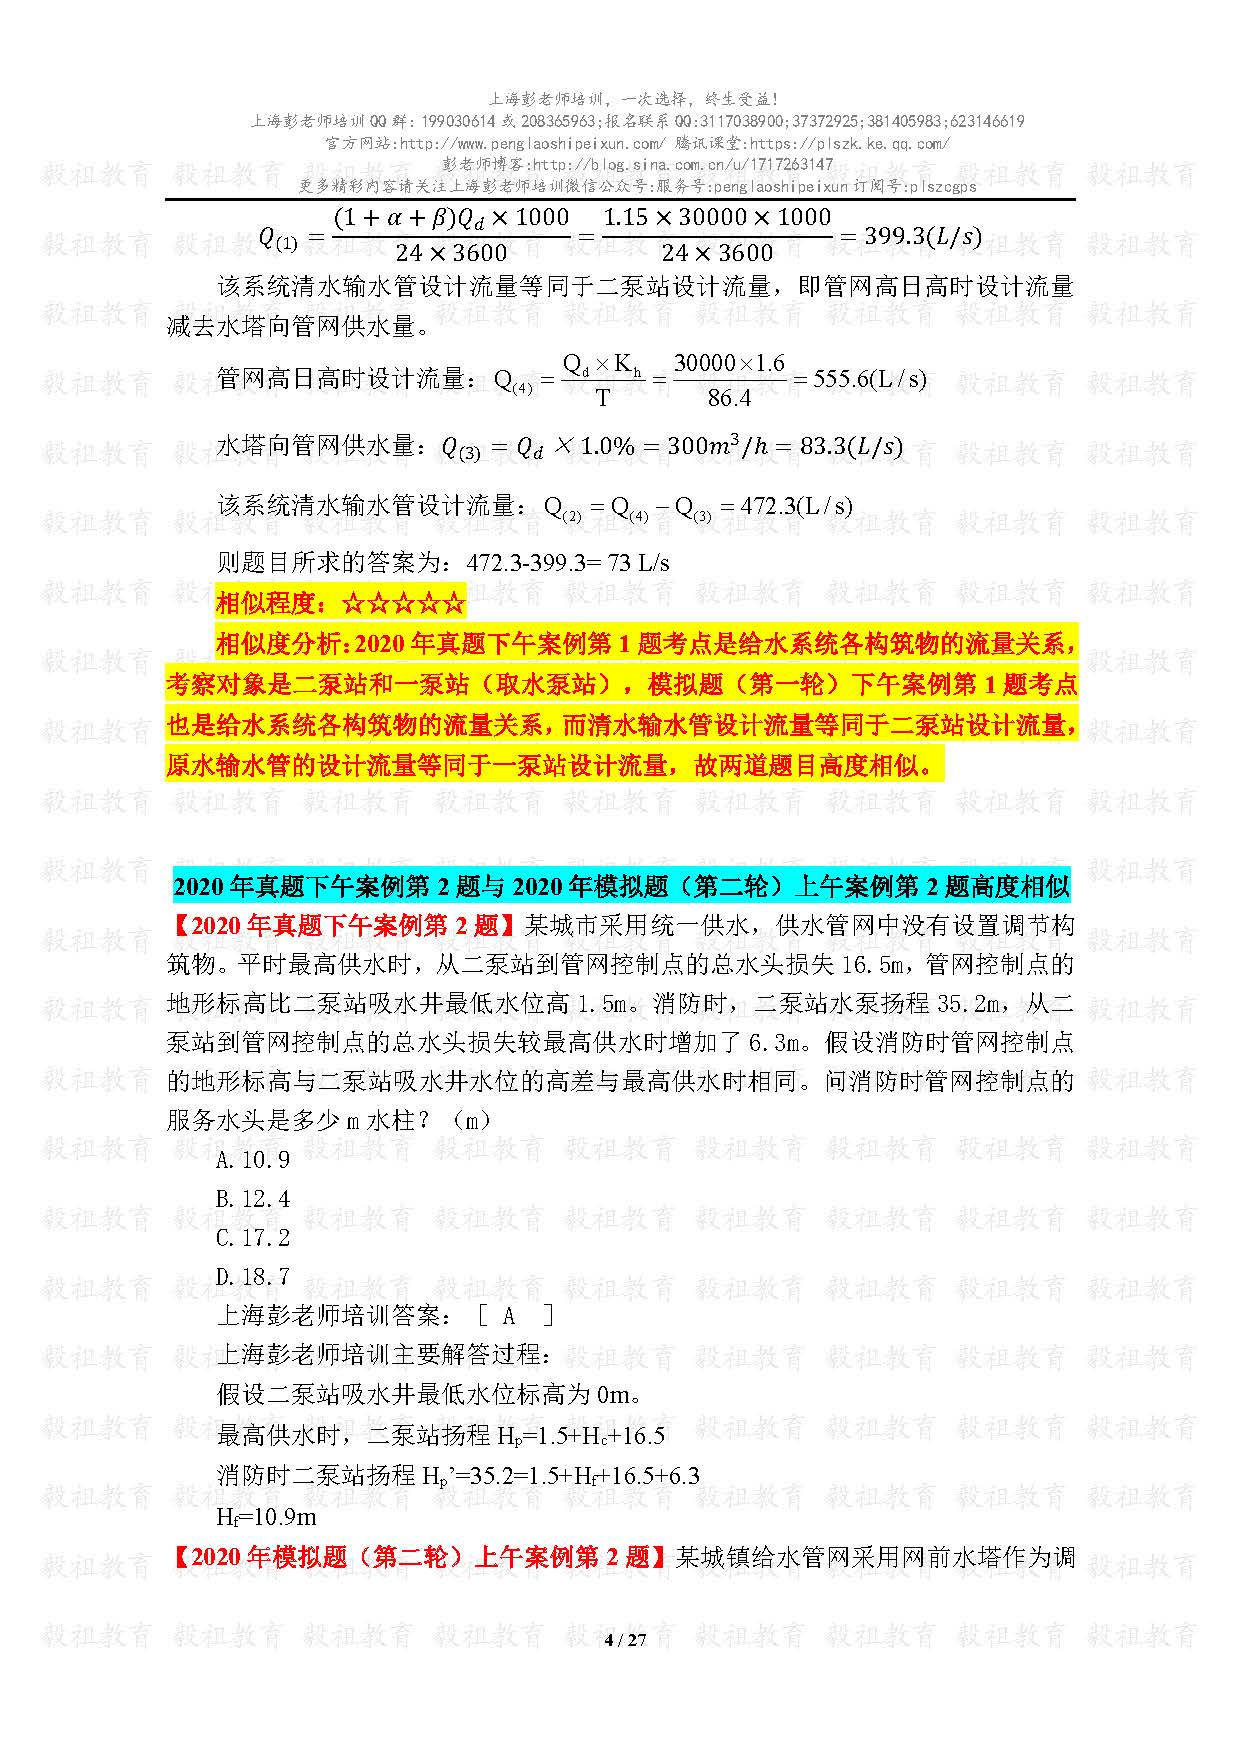 2020注册给排水考试真题与模考题相似度分析-上海彭老师培训_页面_04.jpg.jpg